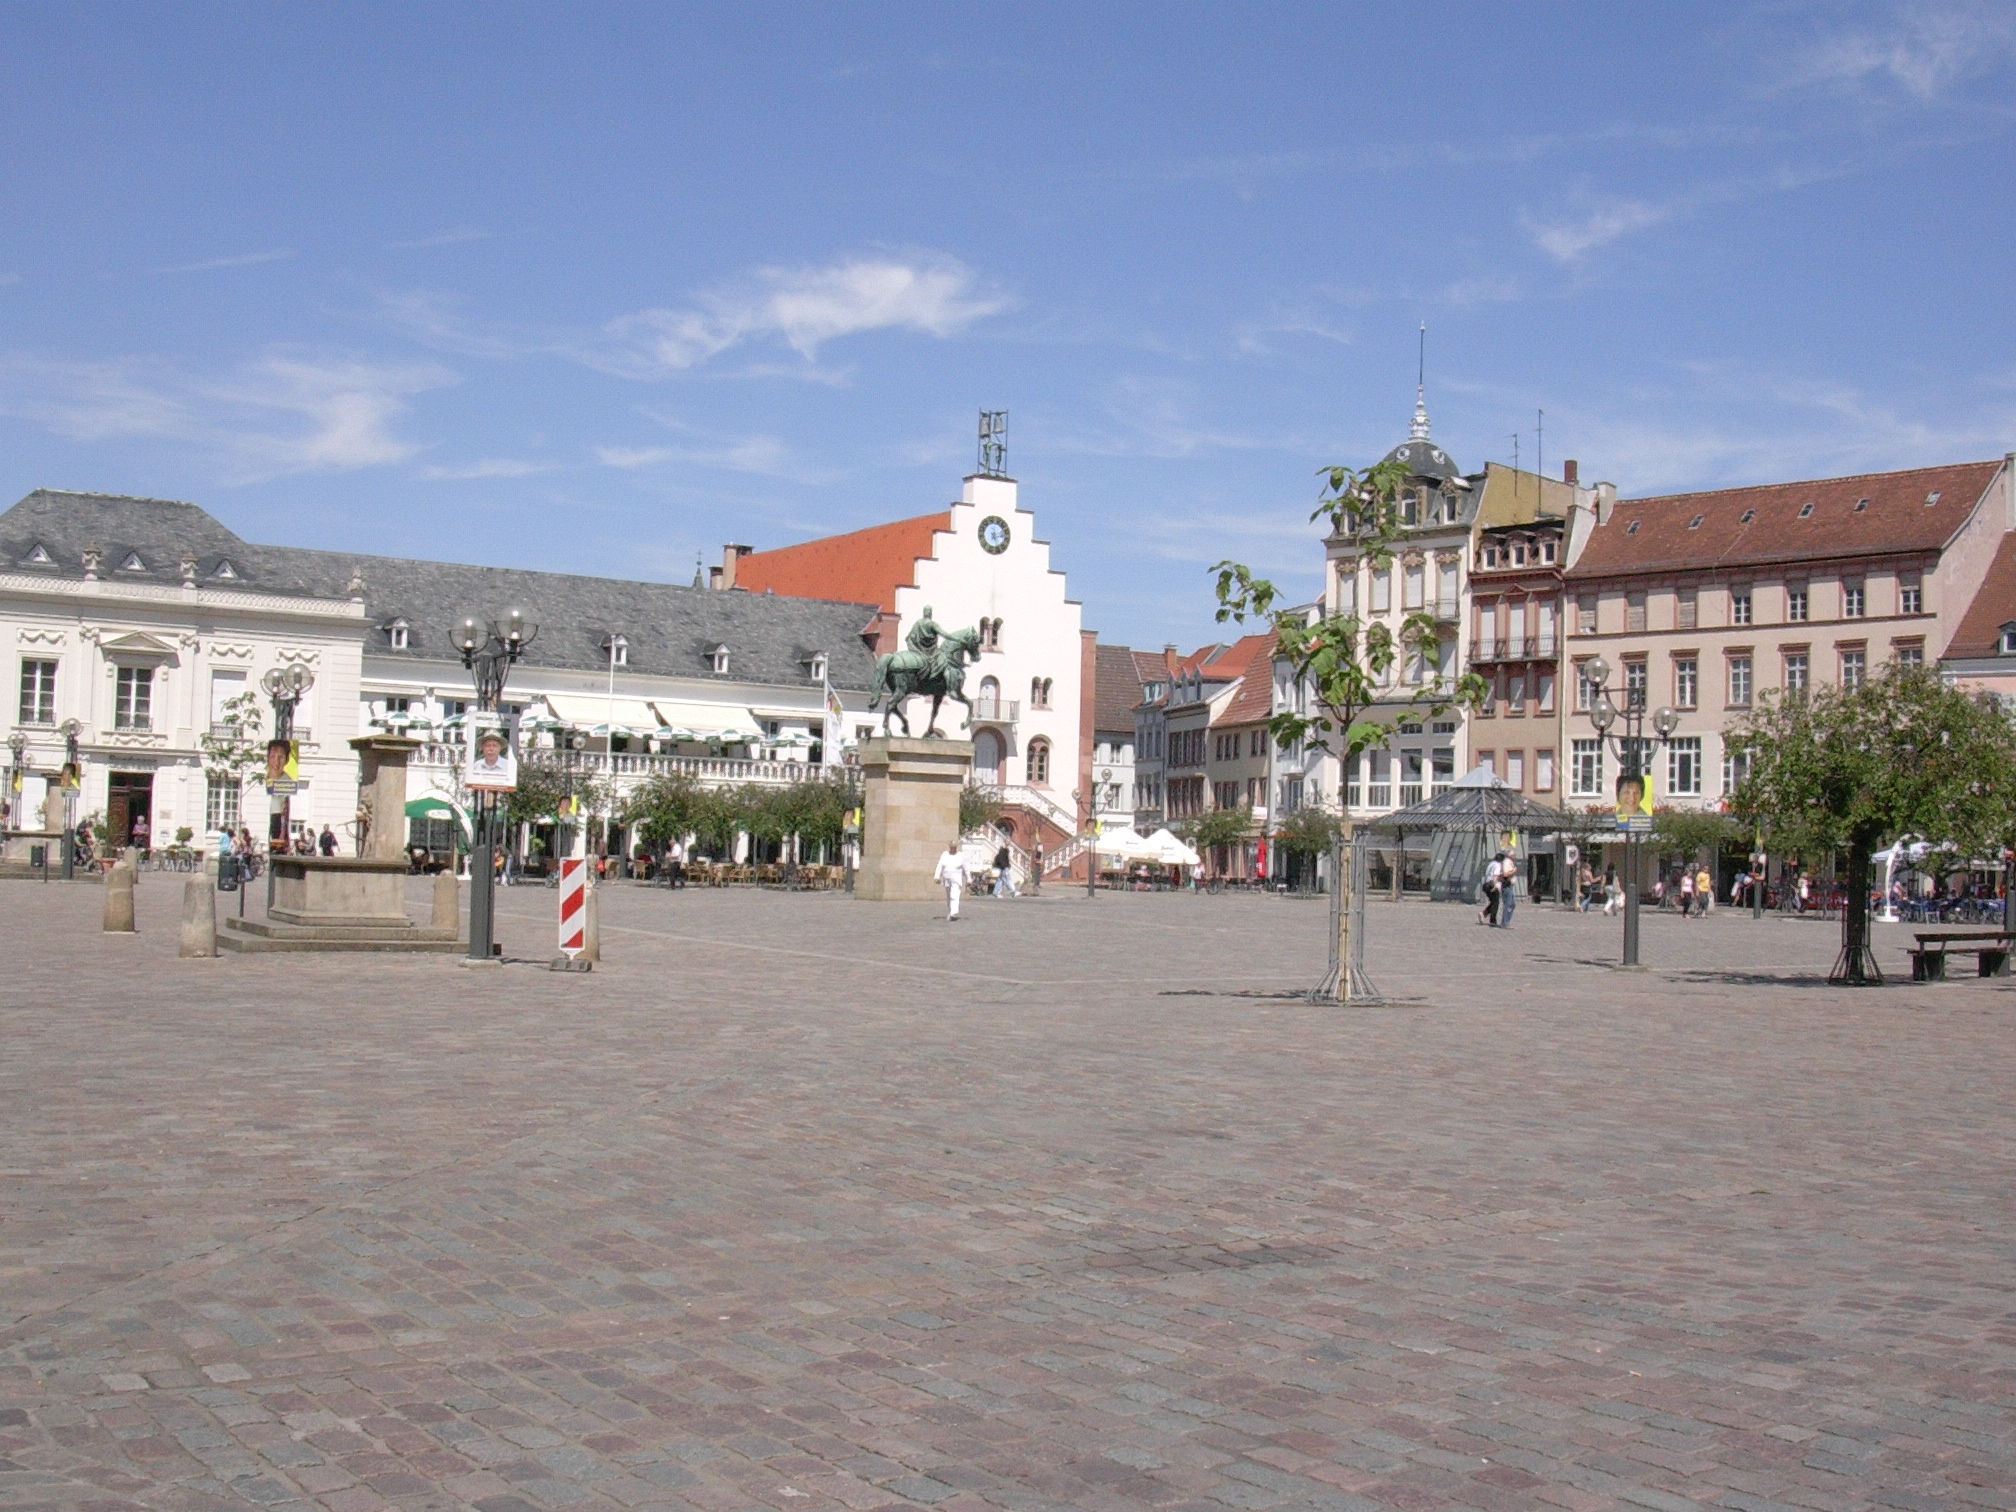 Der Rathausplatz in Landau